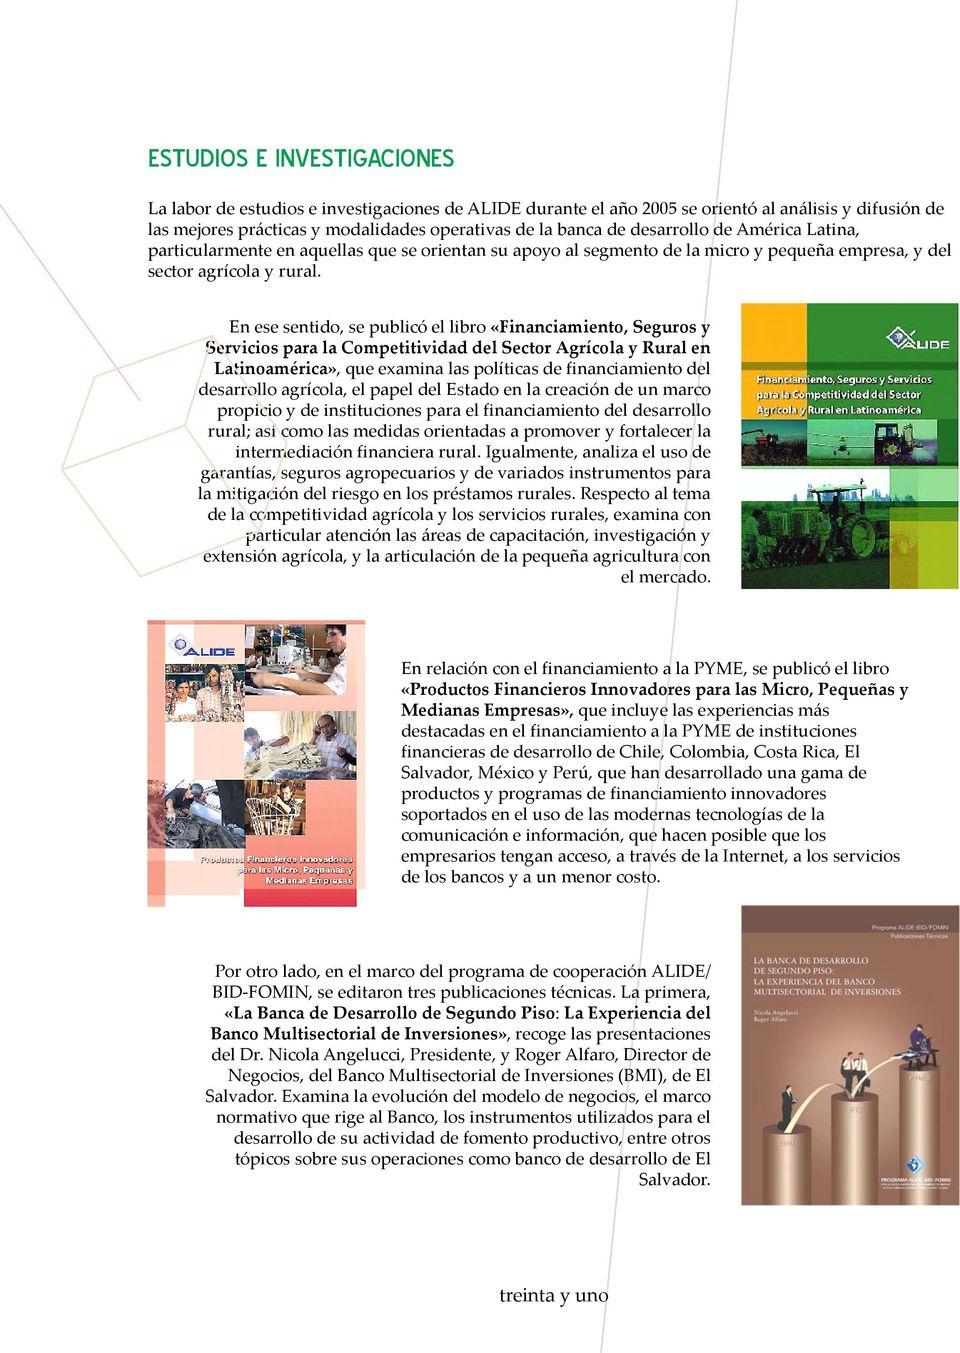 En ese sentido, se publicó el libro «Financiamiento, Seguros y Servicios para la Competitividad del Sector Agrícola y Rural en Latinoamérica», que examina las políticas de financiamiento del